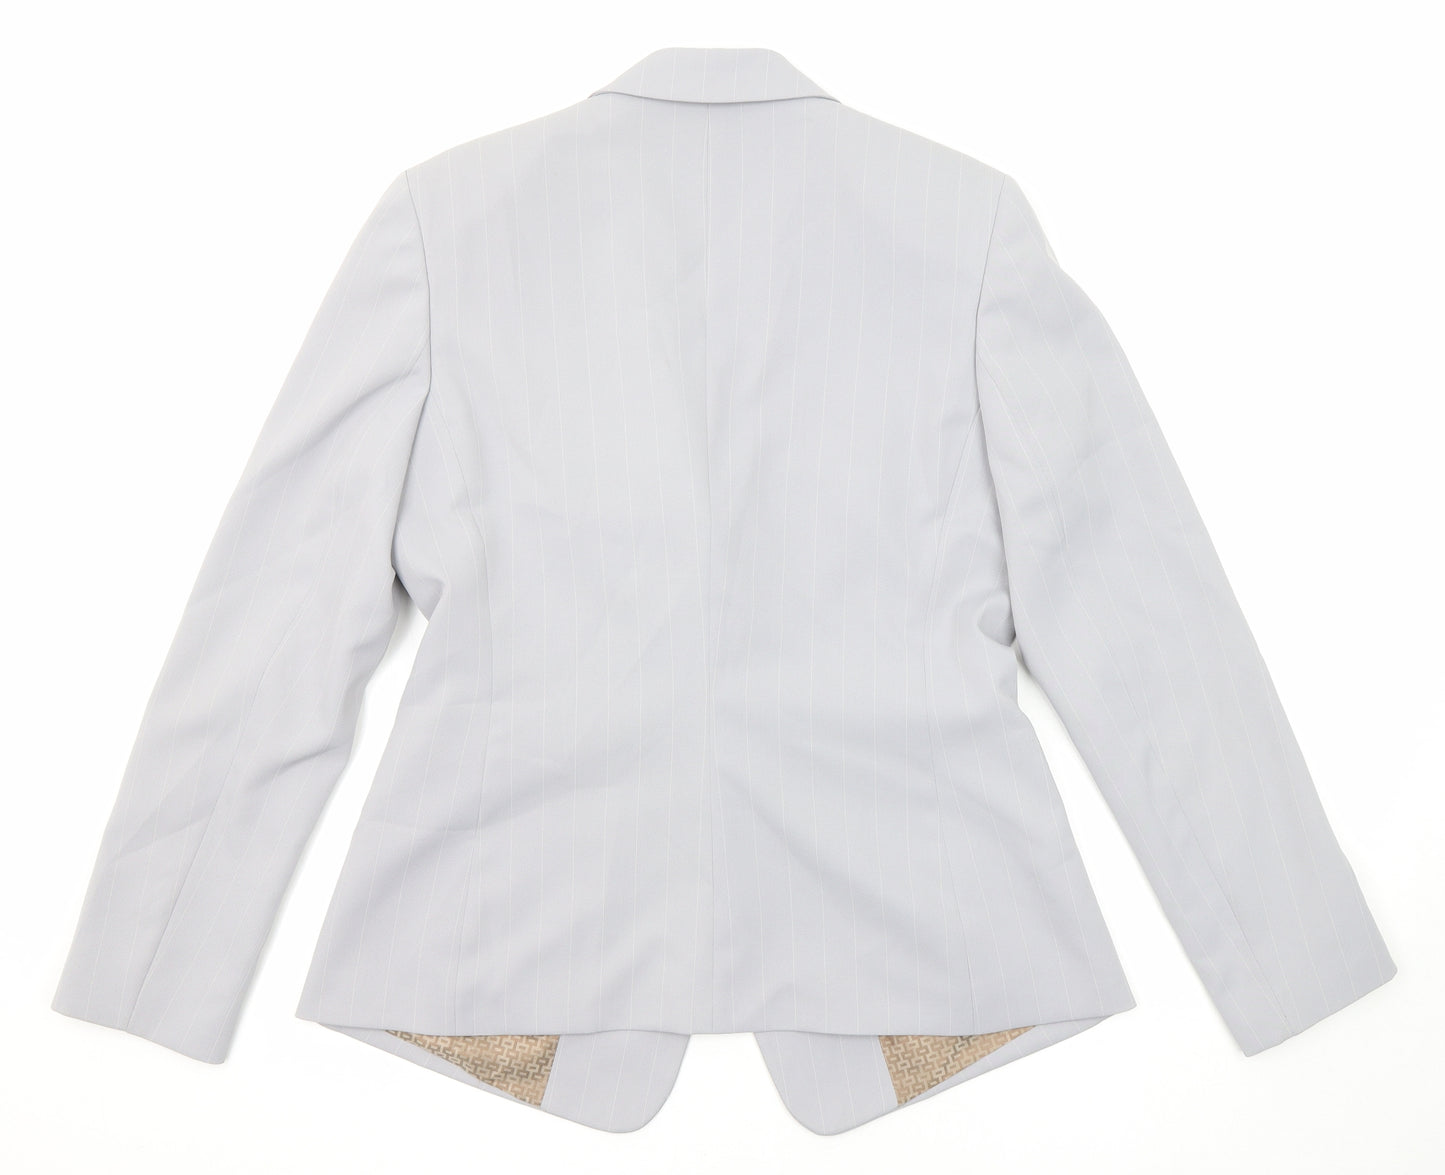 Lene Sand Womens Grey Polyester Jacket Suit Jacket Size 12